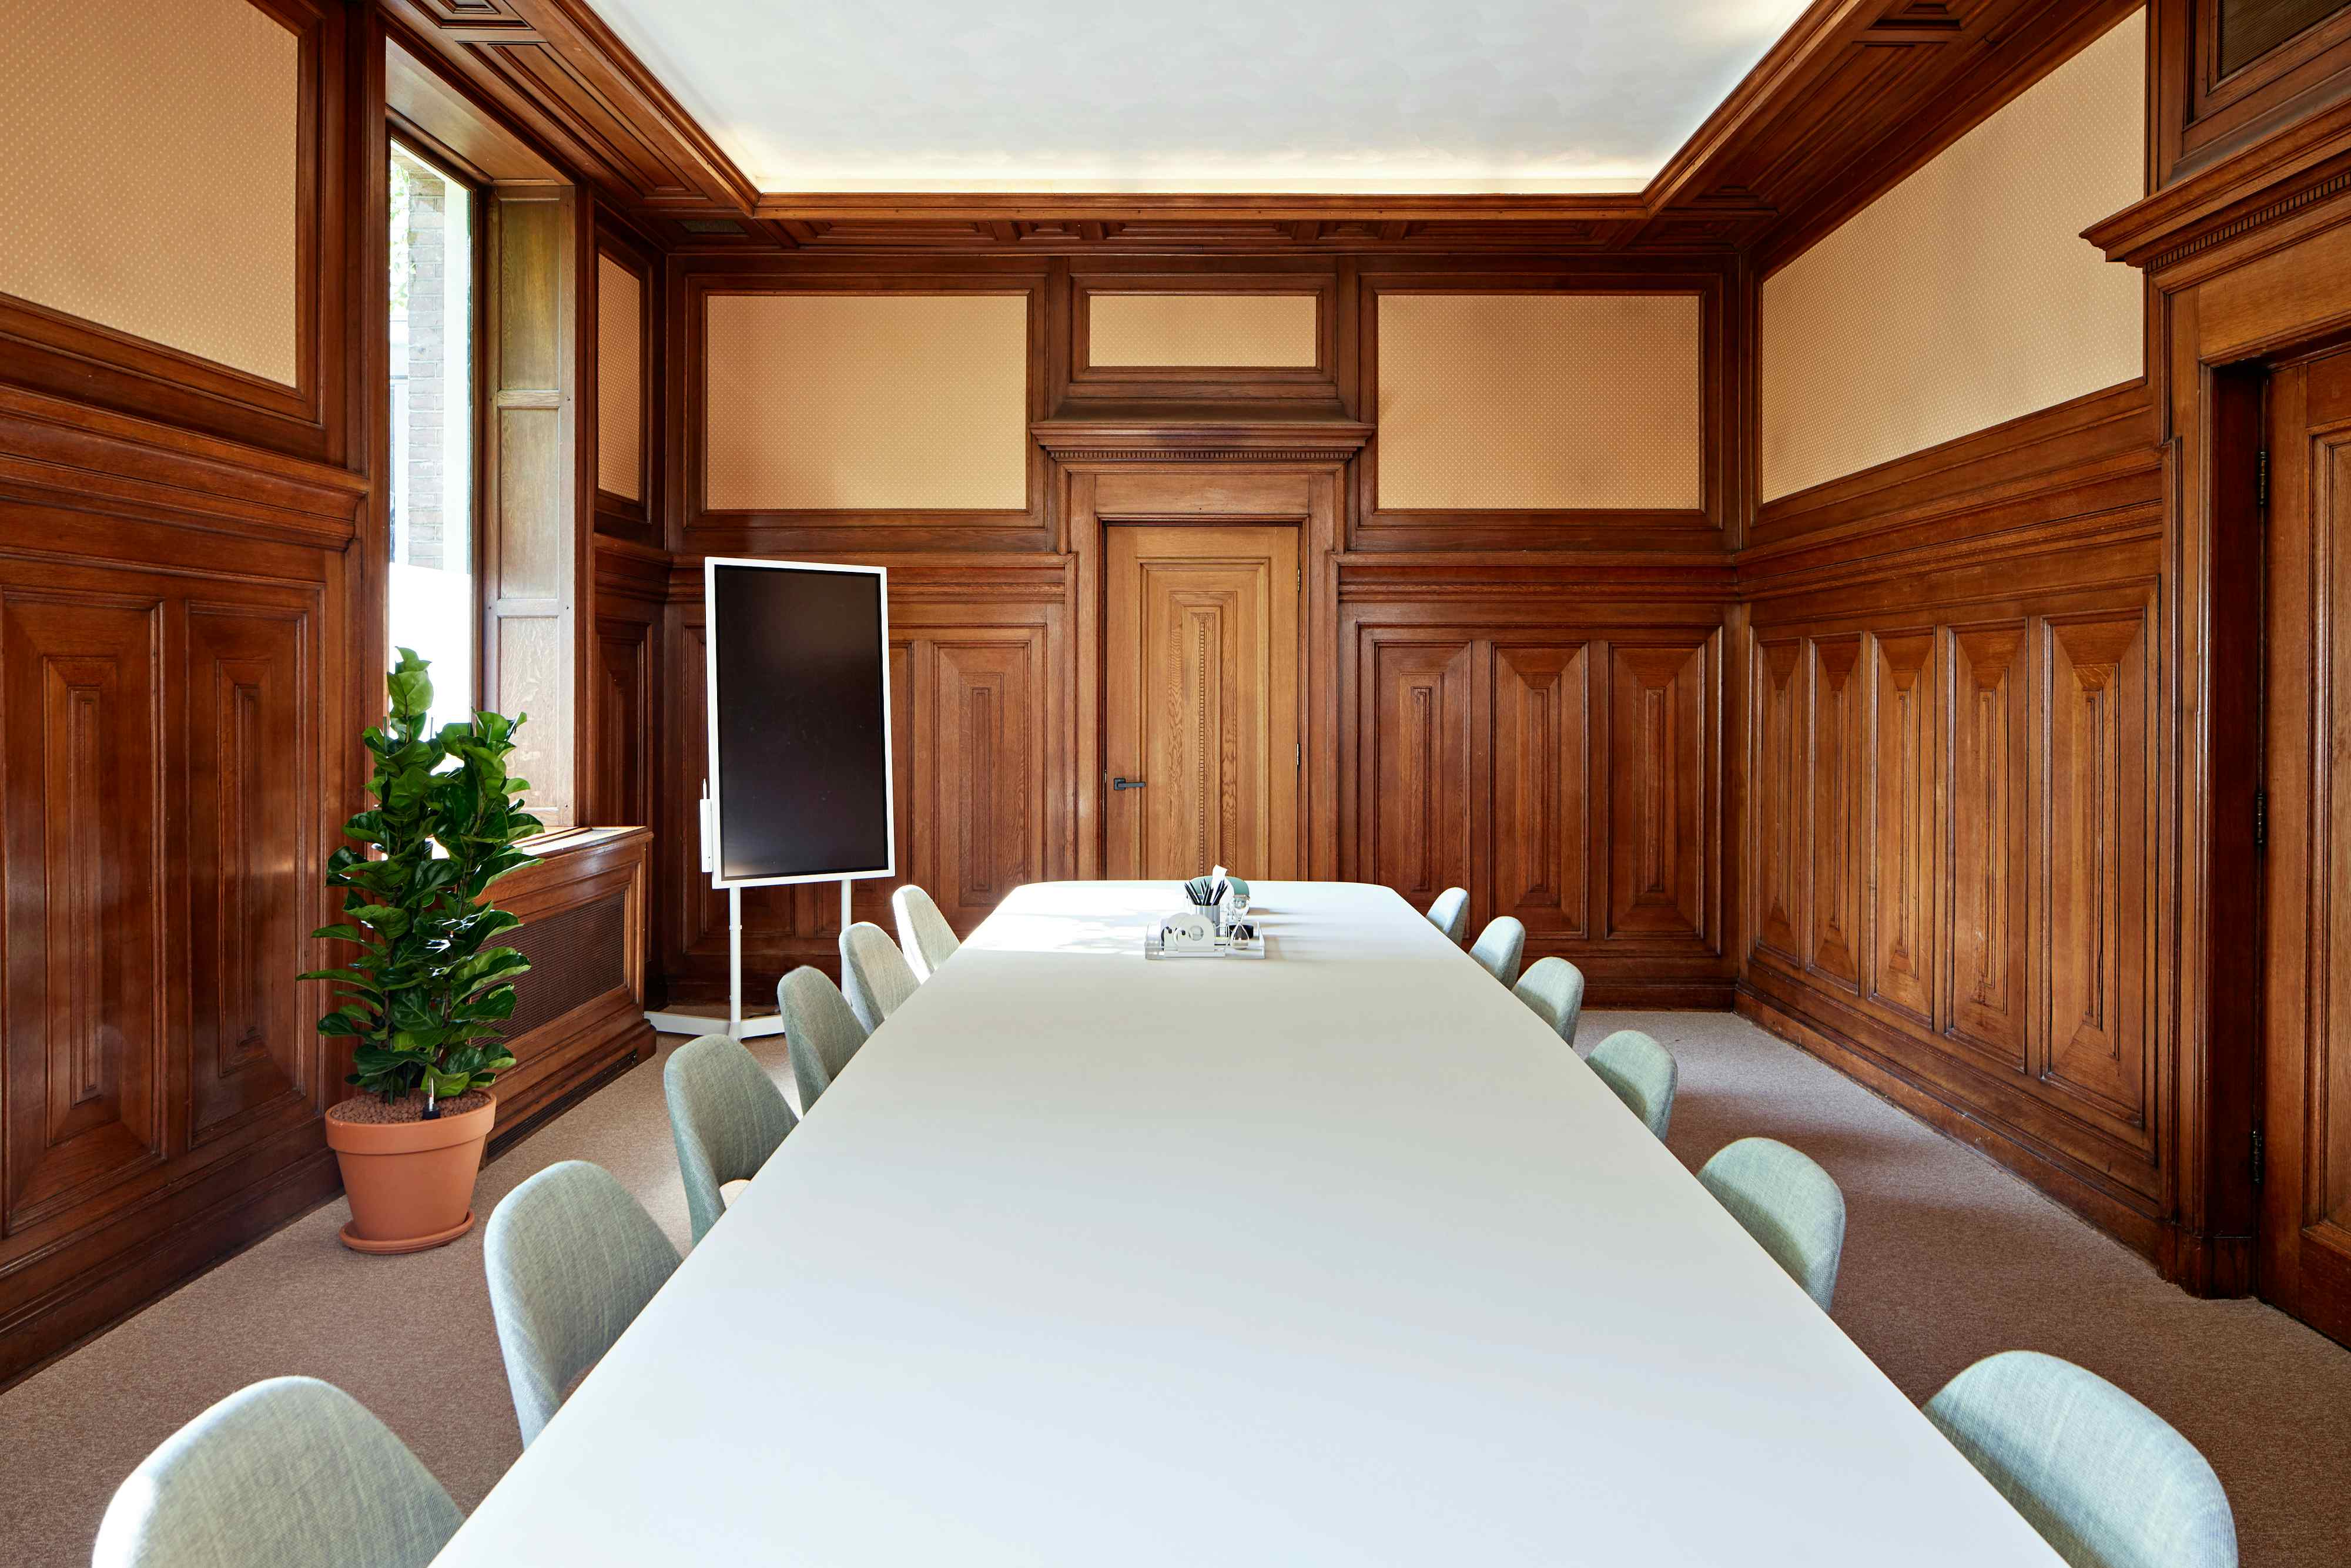 Meeting room 1, Spaces - Amsterdam, Spaces Keizersgracht